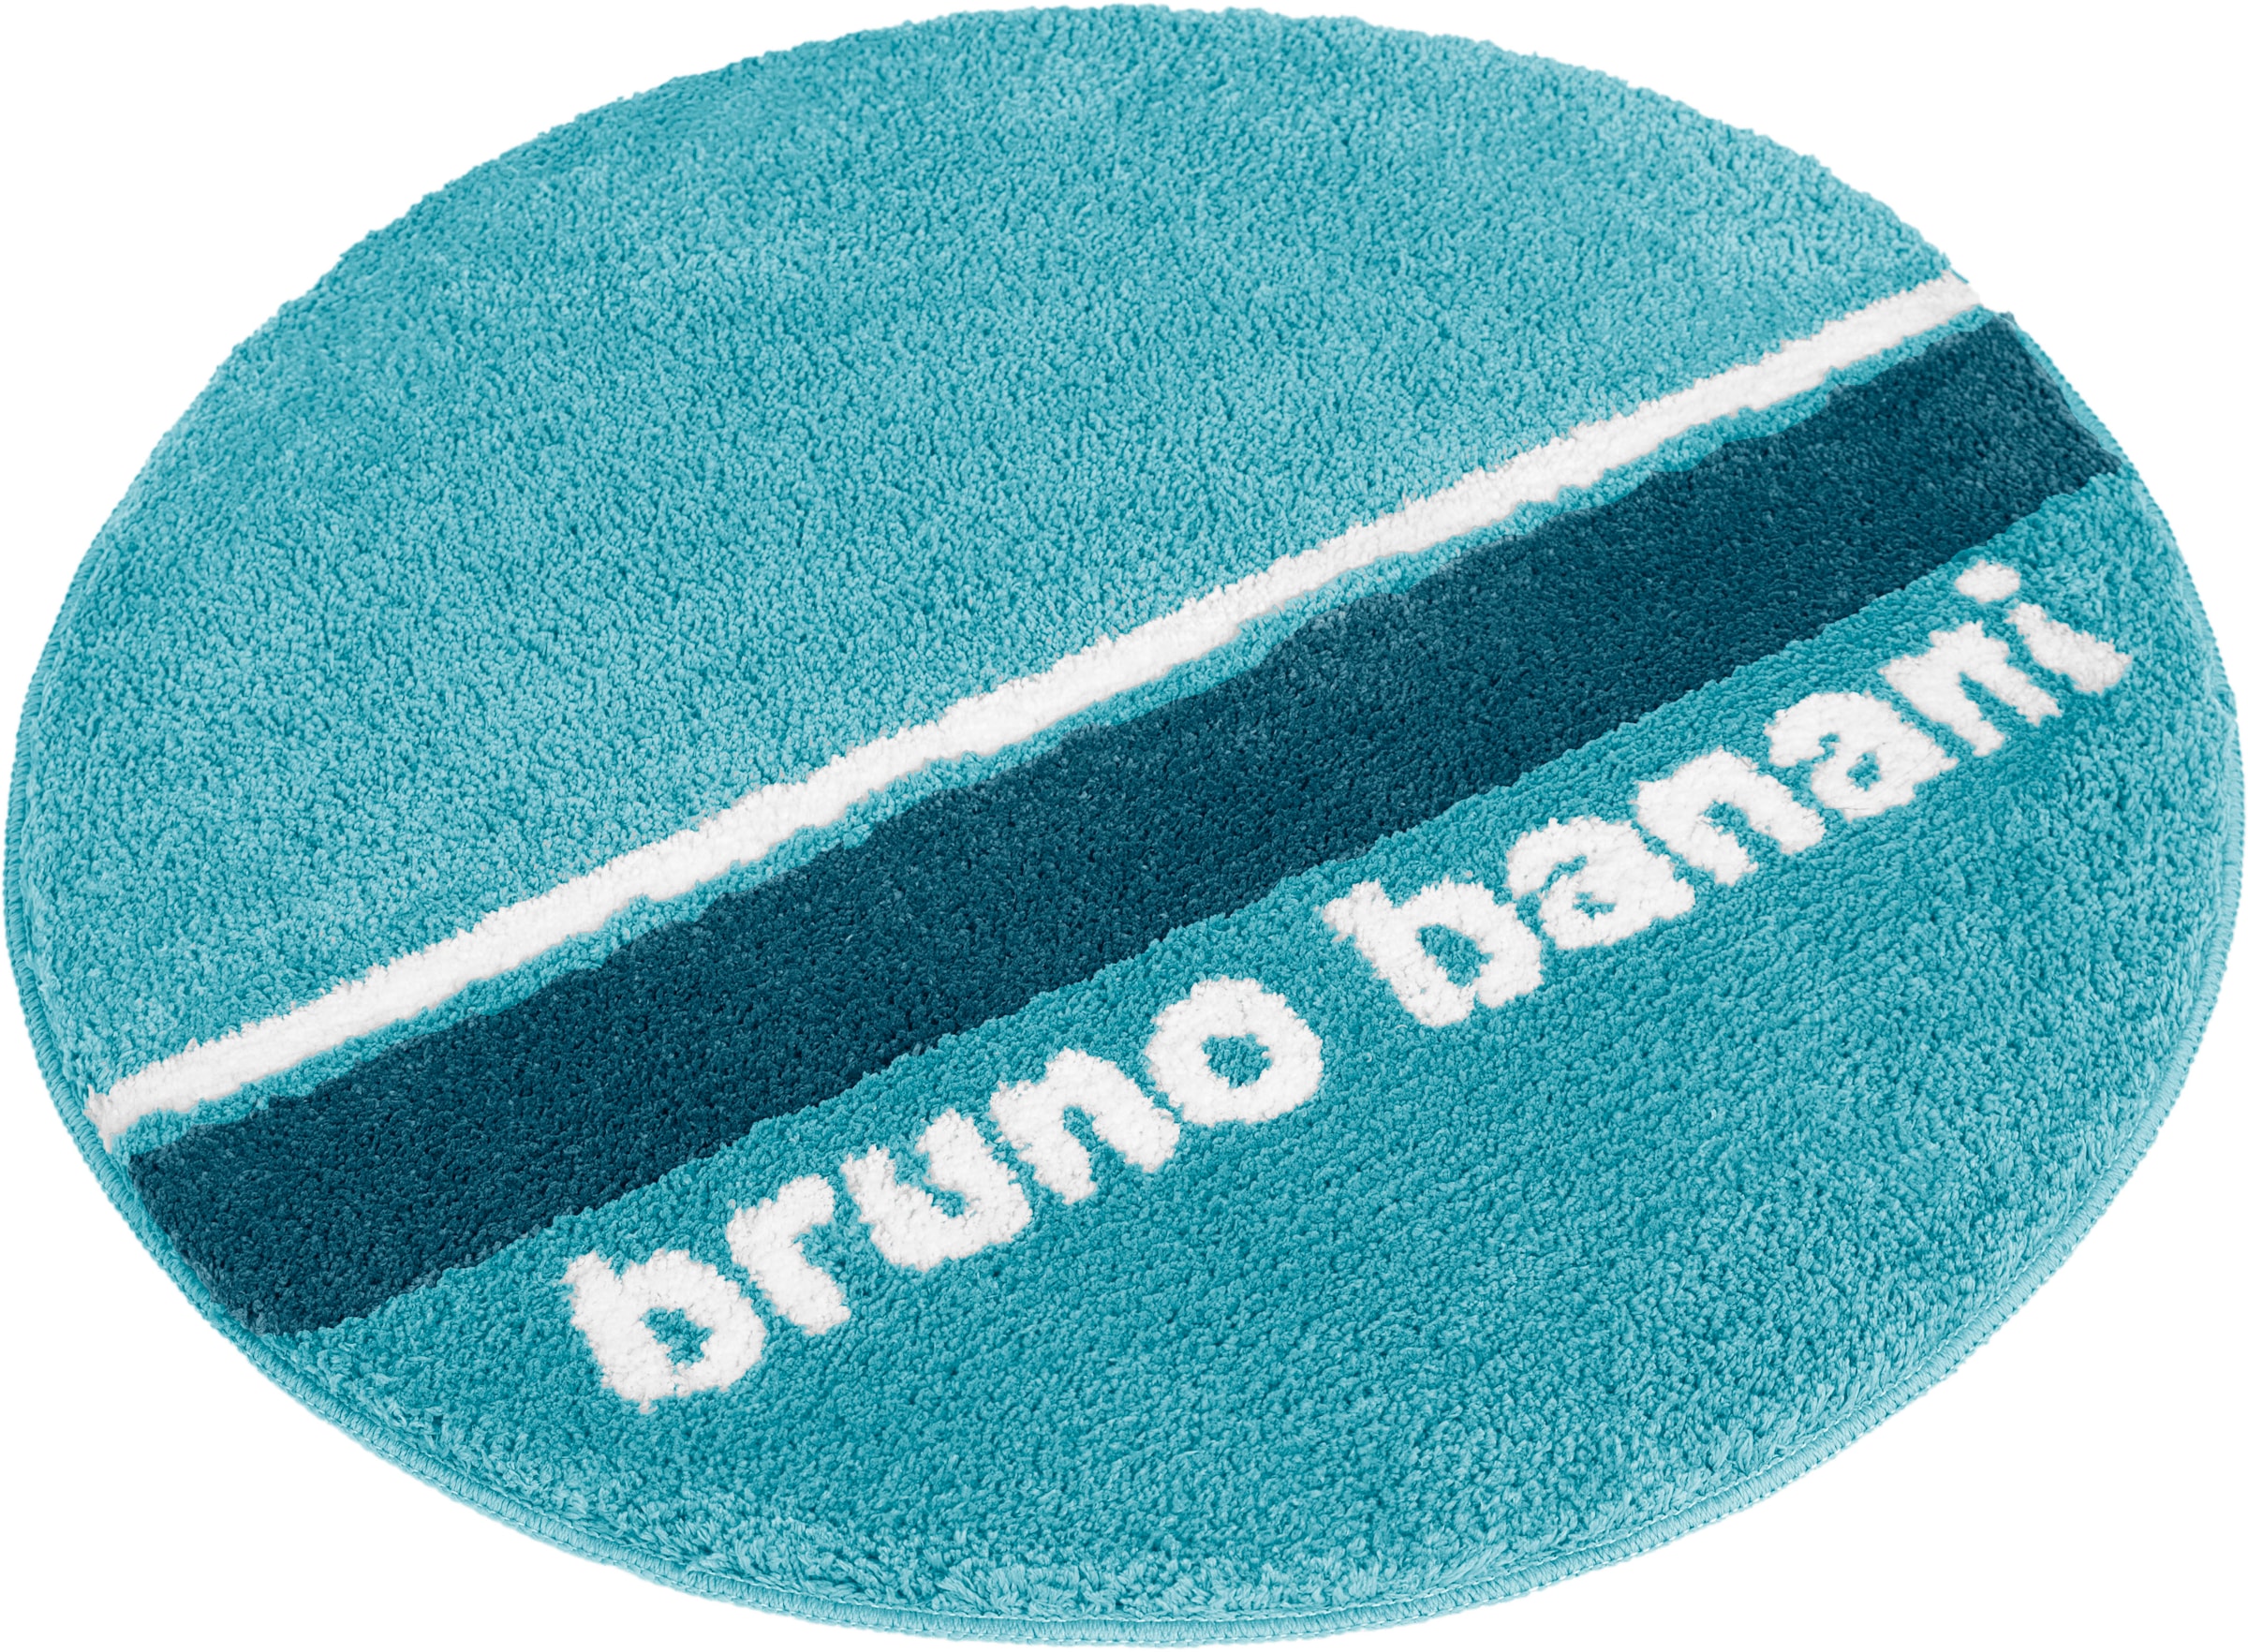 Bruno Banani Badematte »Maja«, Höhe 20 mm, rutschhemmend beschichtet, fußbodenheizungsgeeignet-strapazierfähig-schnell trocknend, weiche Haptik, mit Logo, Badematten auch als 3 teiliges Set erhältlich